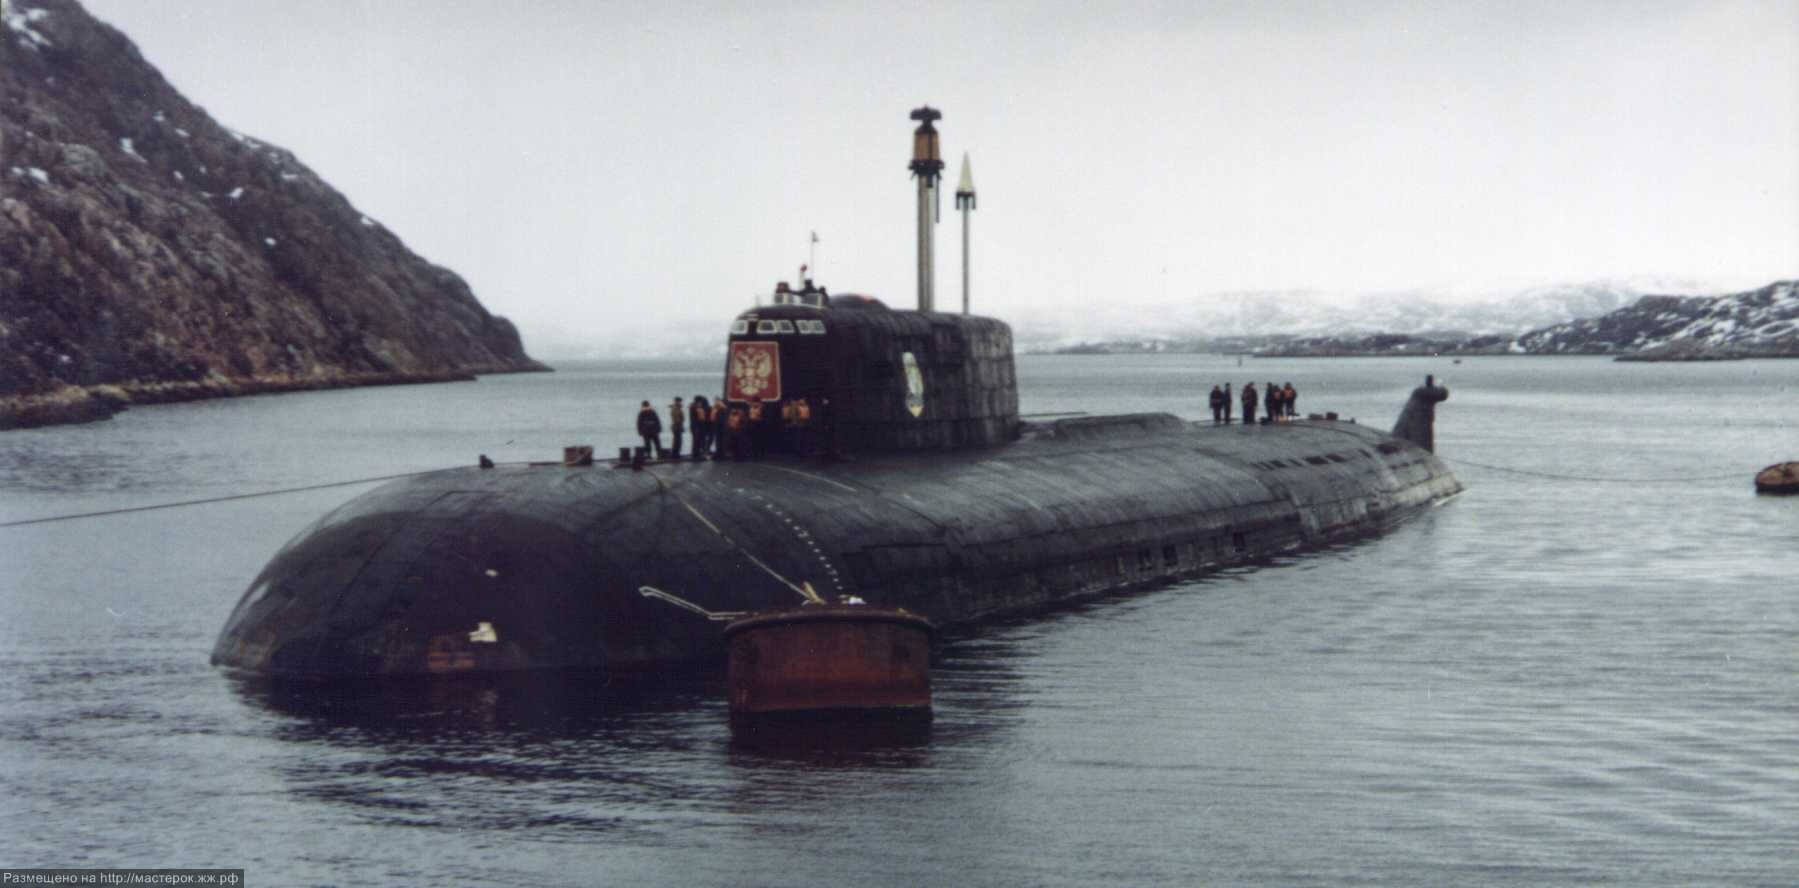 Причины потопа подводной лодки Курск: детали и основные факторы